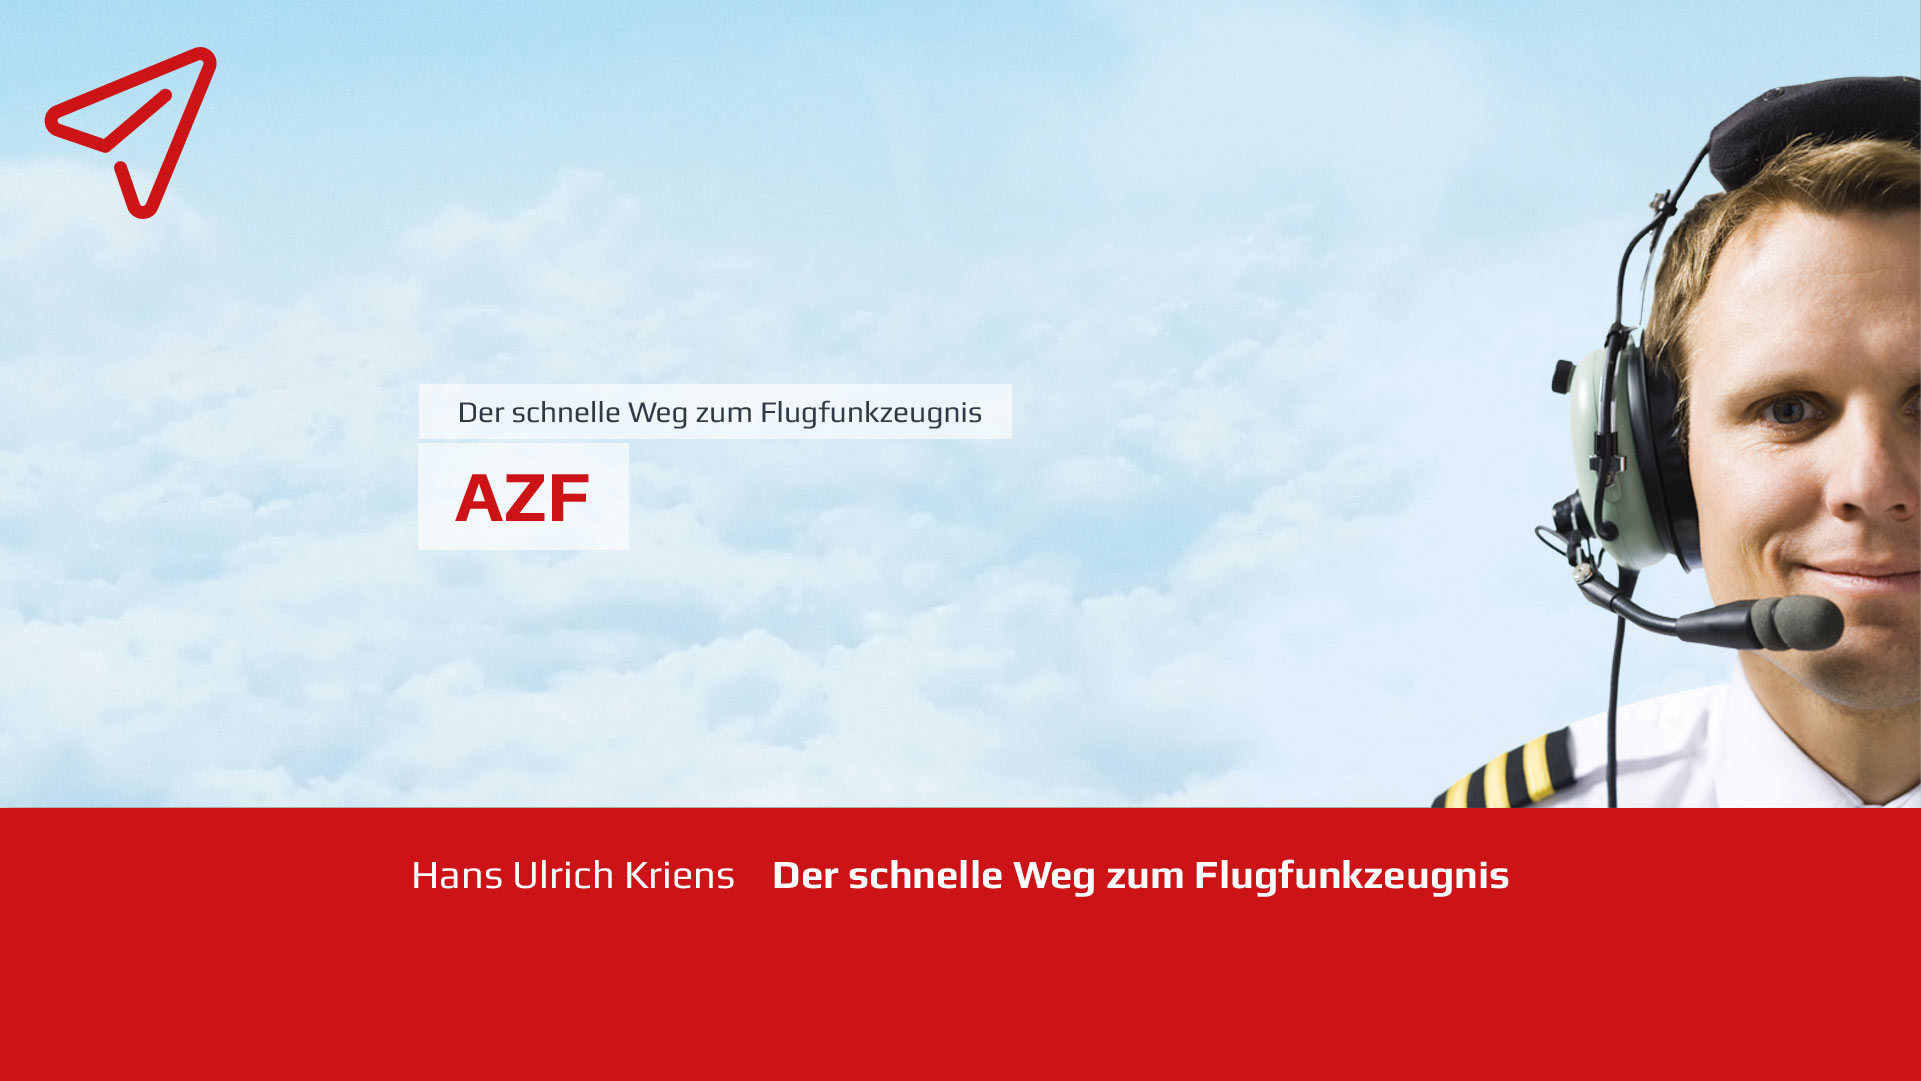 AZF - Der schnelle Weg zum Flugfunkzeugnis